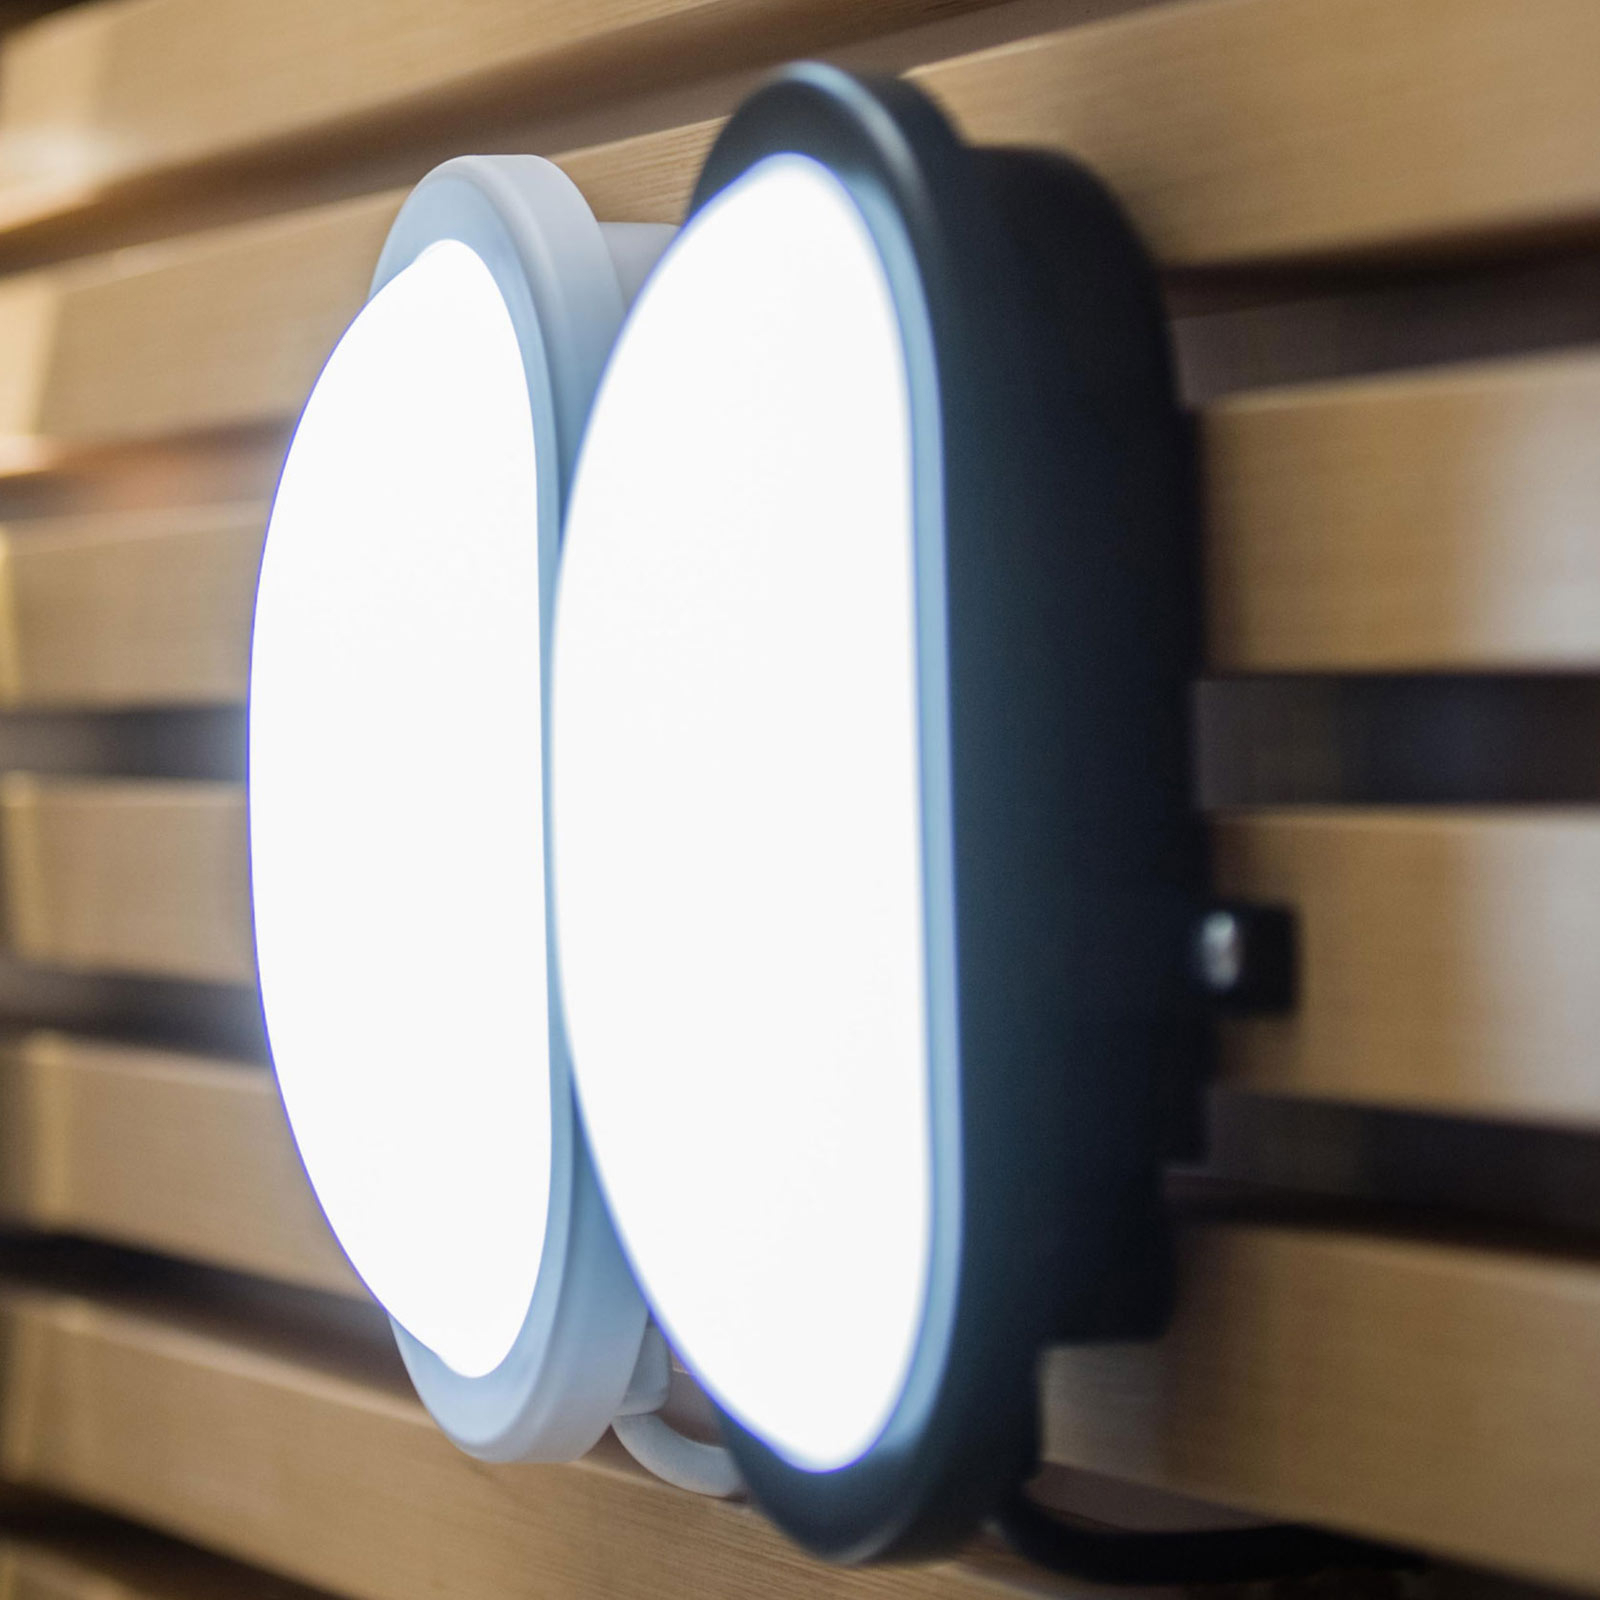 LEDVANCE Bulkhead LED āra sienas gaisma 11 W baltā krāsā